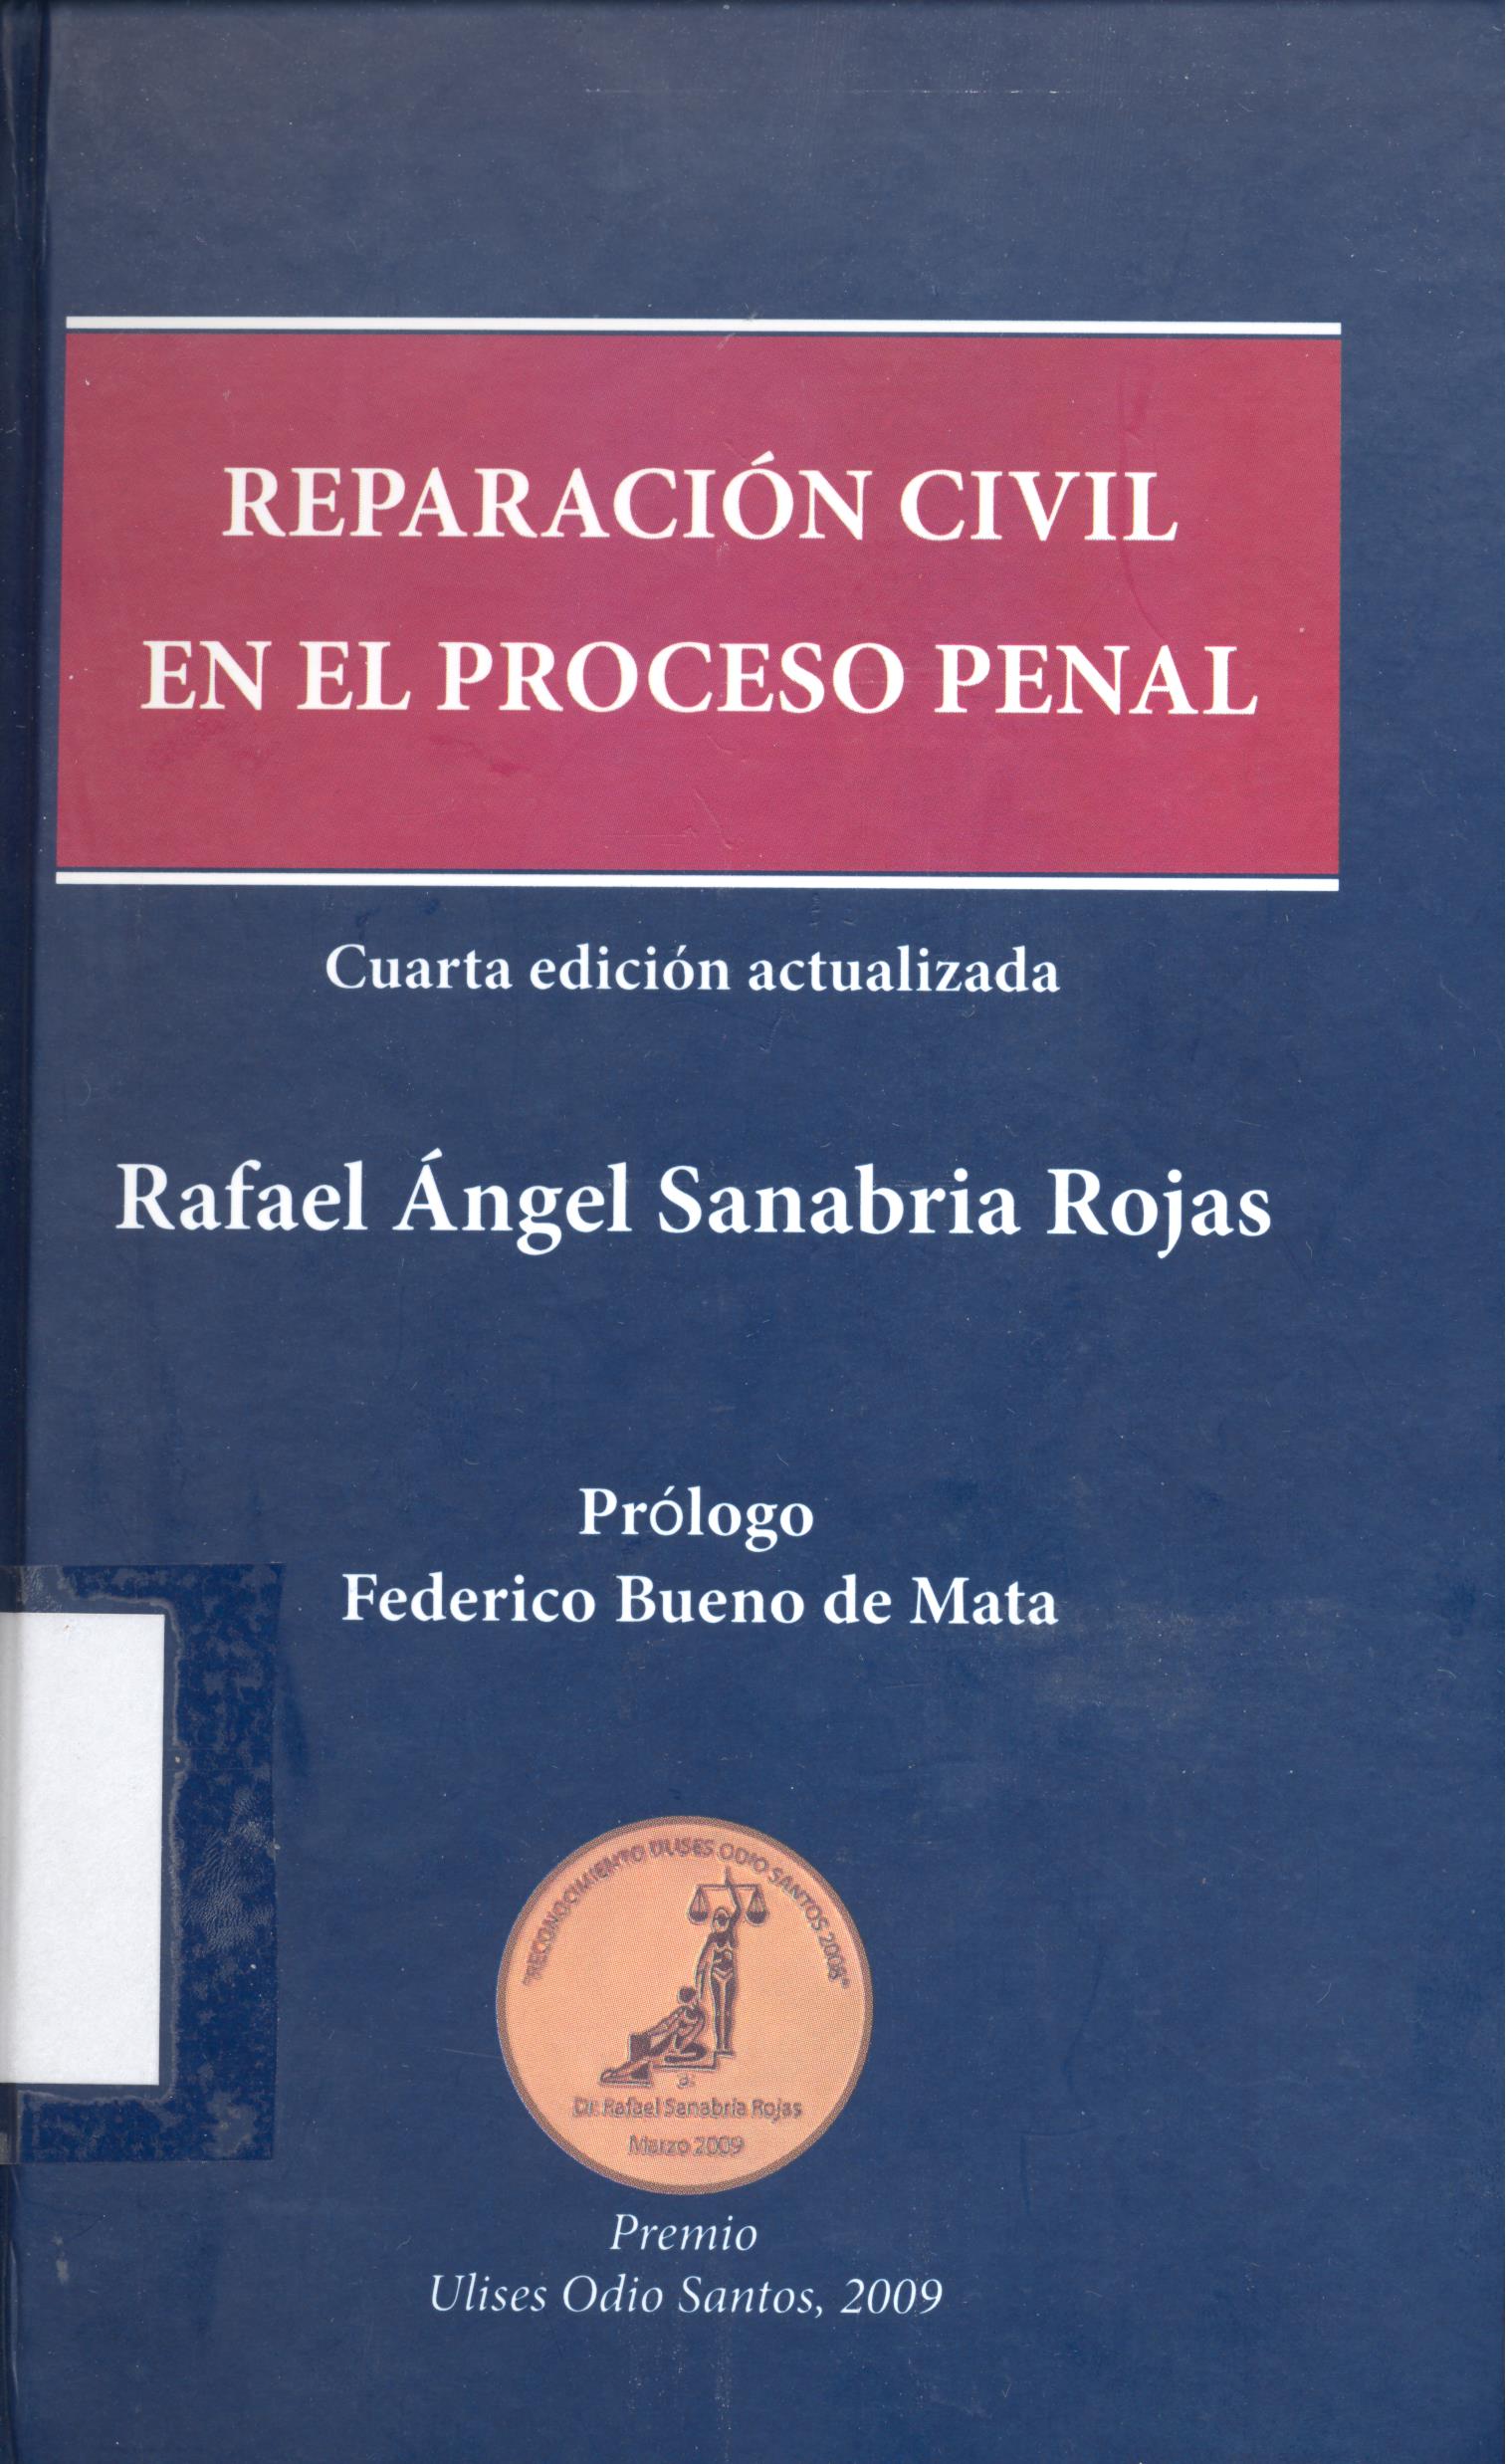 Imagen de portada del libro Reparación civil en el proceso penal